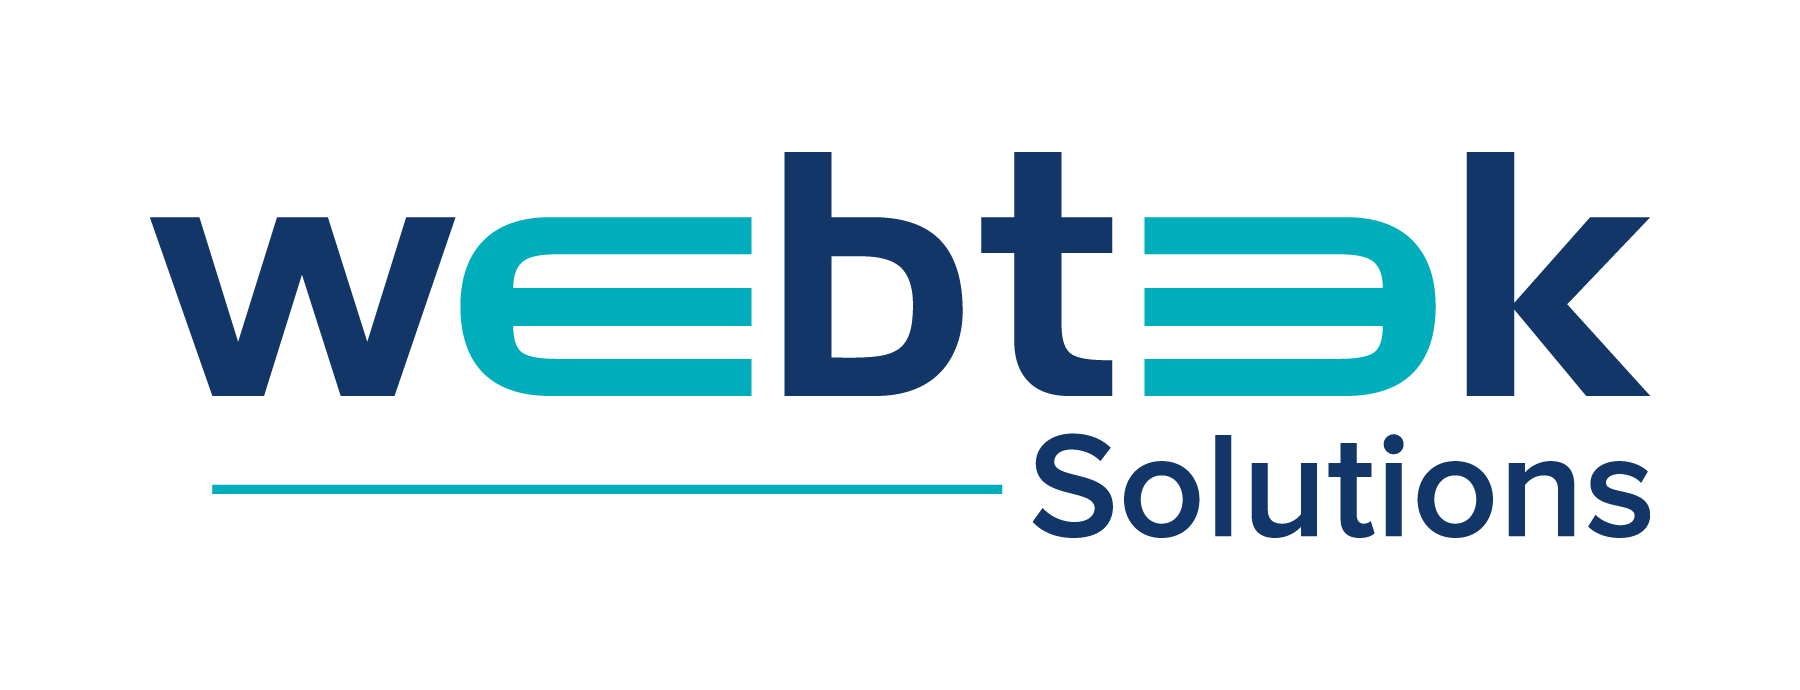 WebTek Solutions